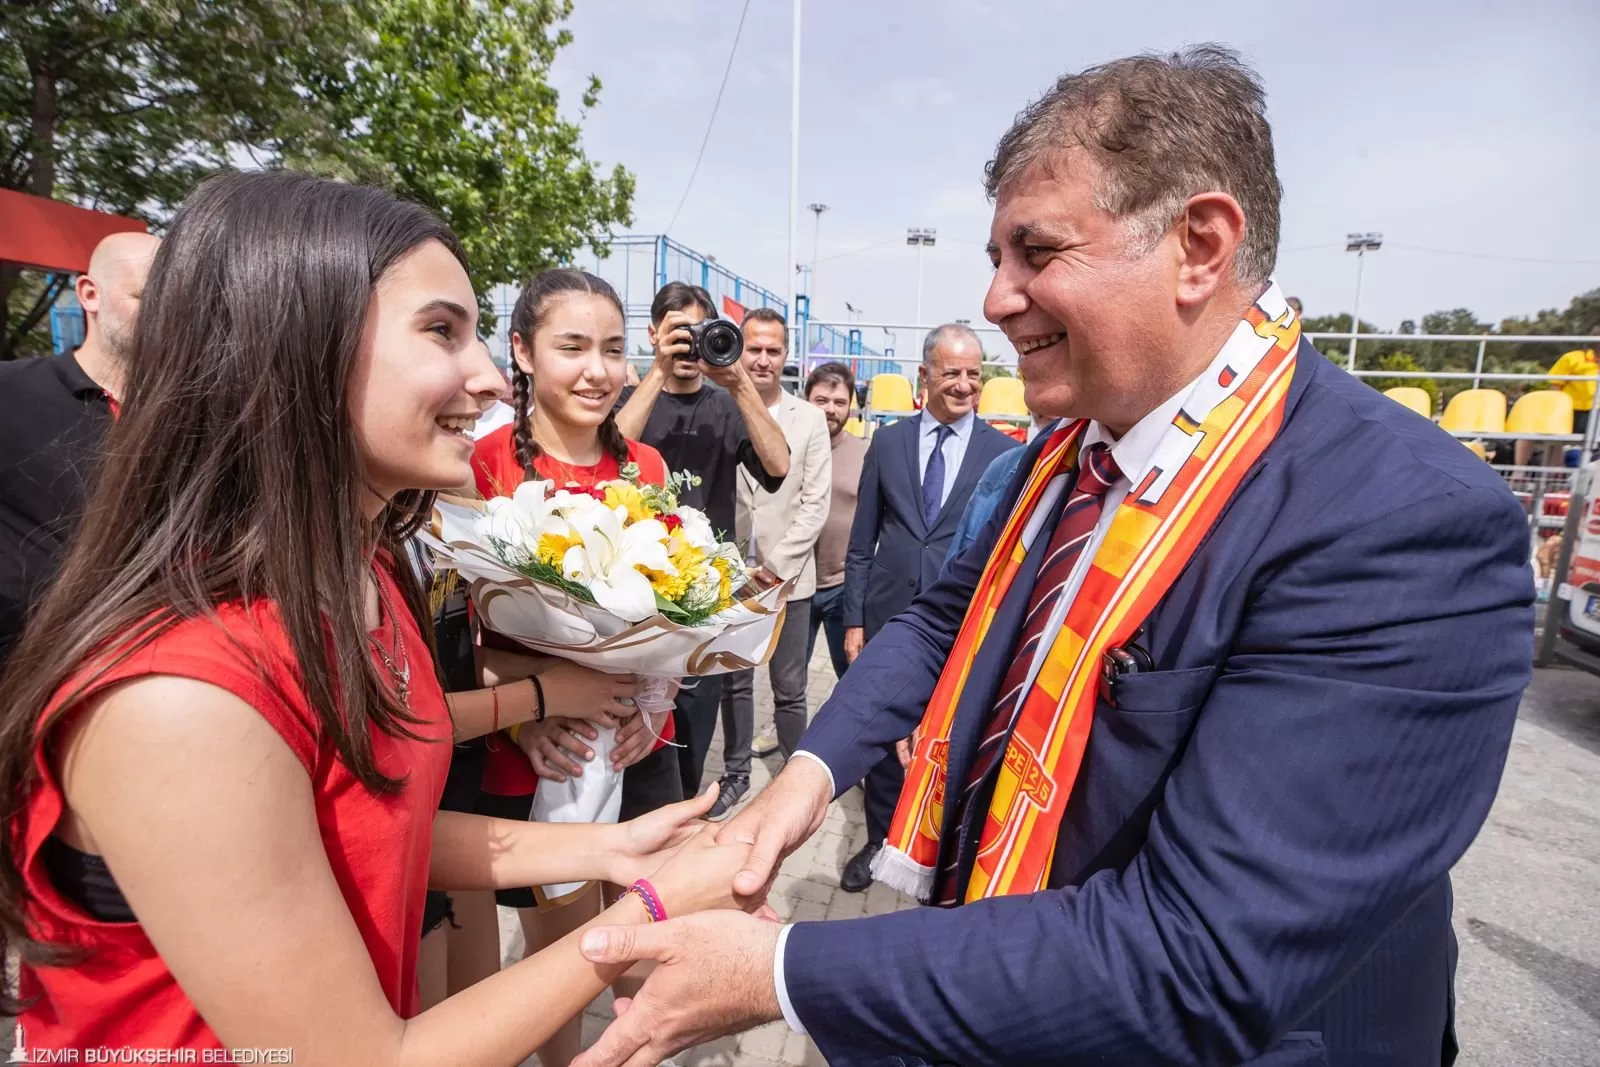 Dr. Cemil Tugay, 23 Nisan Ulusal Egemenlik ve Çocuk Bayramı'nda Göztepe Spor Kulübü'nün minik sporcularıyla bir araya gelerek coşkulu bir kutlama gerçekleştirdi.